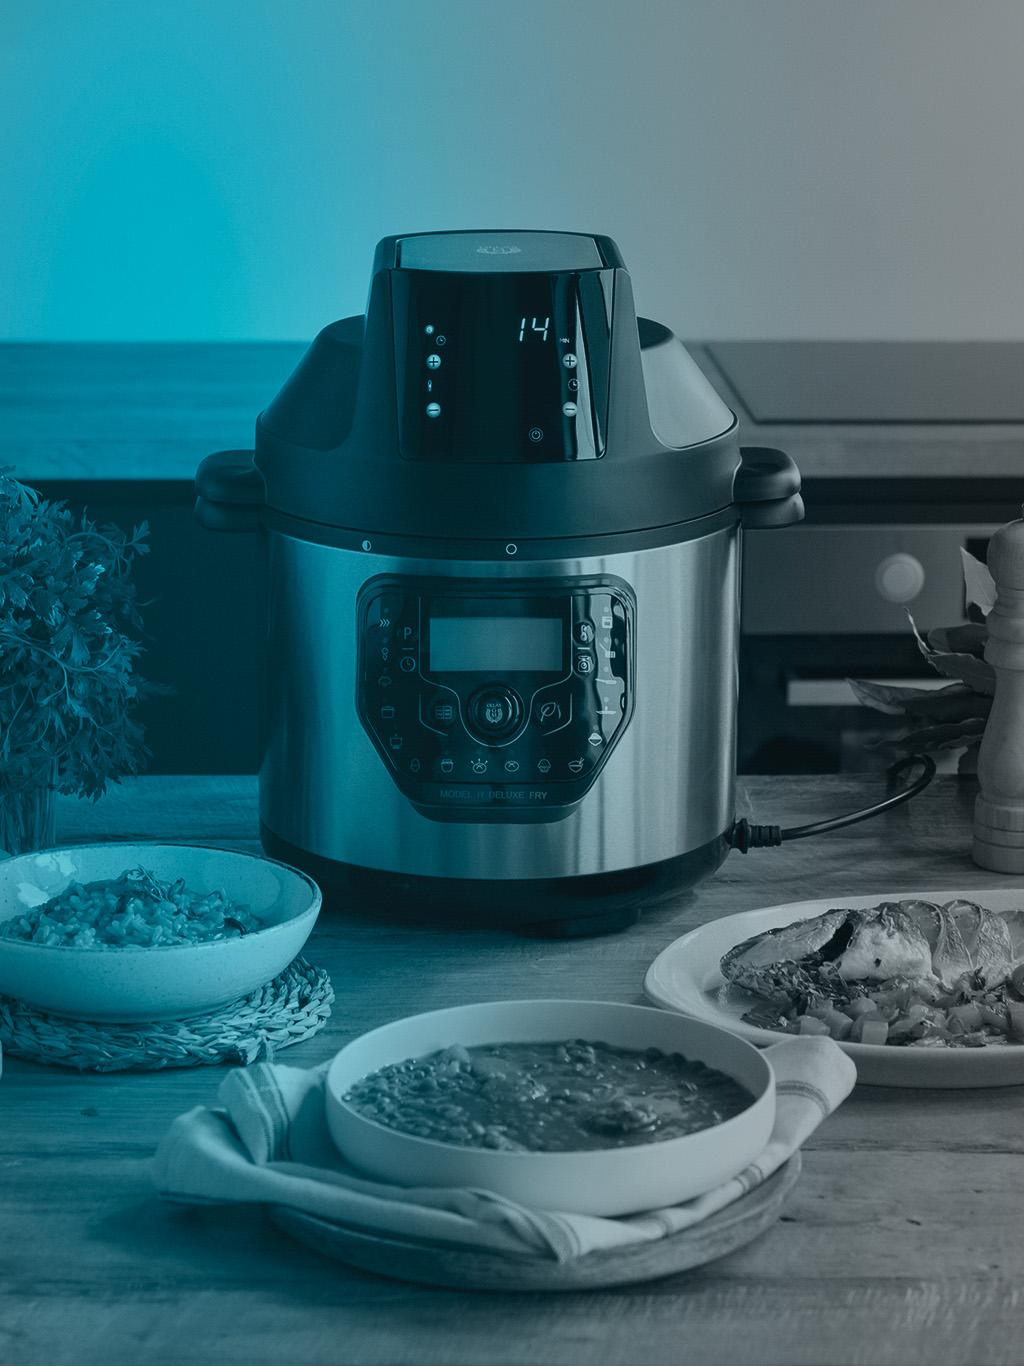 La olla GM H Deluxe Fry de Cecotec te ofrece hasta 24 formas de cocina